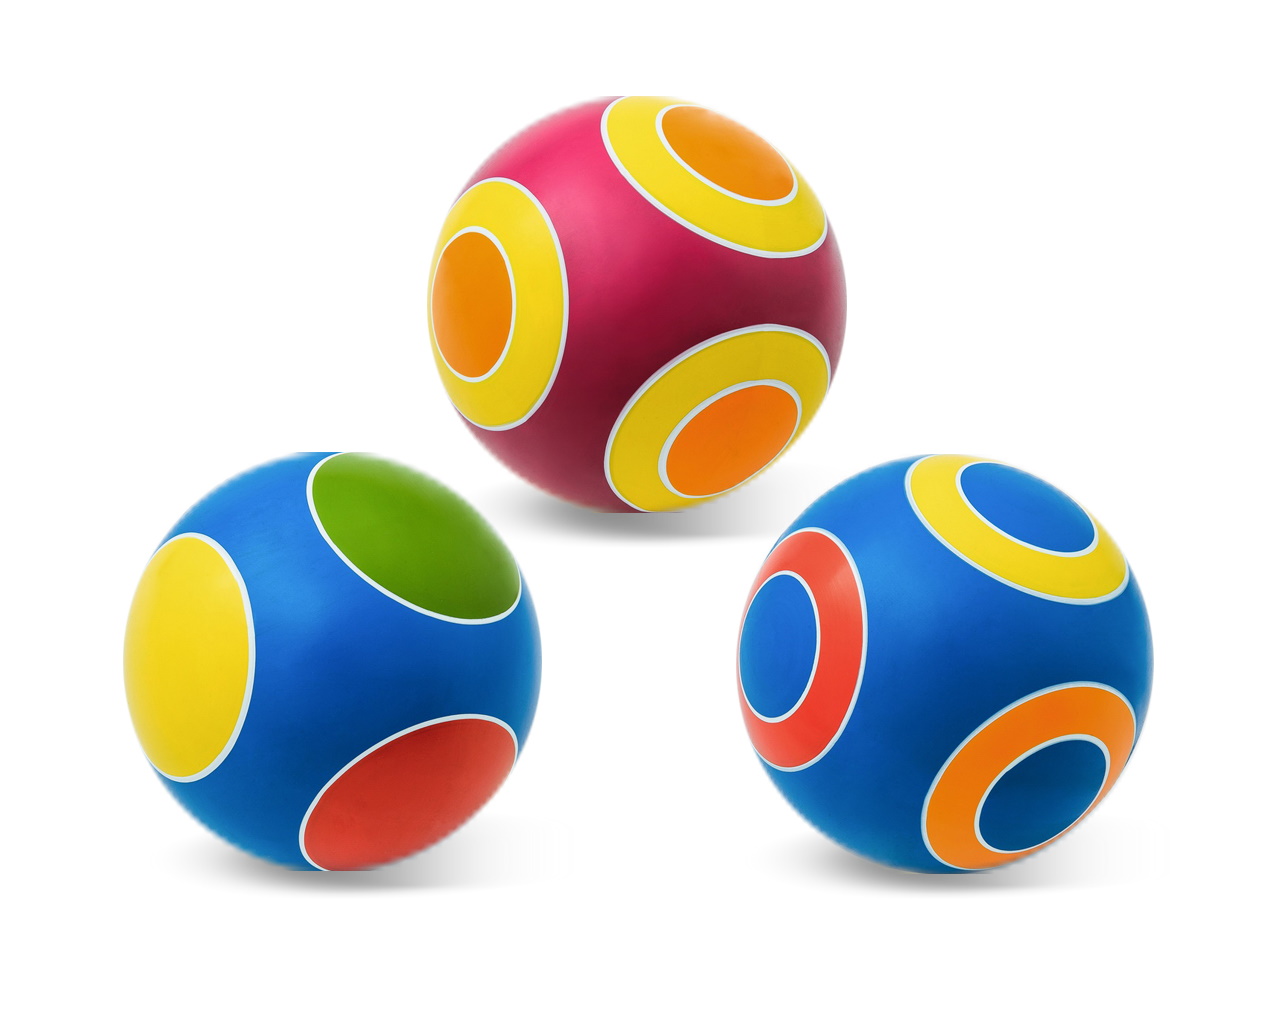 Мяч резиновый диаметр 125 мм., серия Кружочки, Чебоксары, Р3-125 АКЦИЯ 